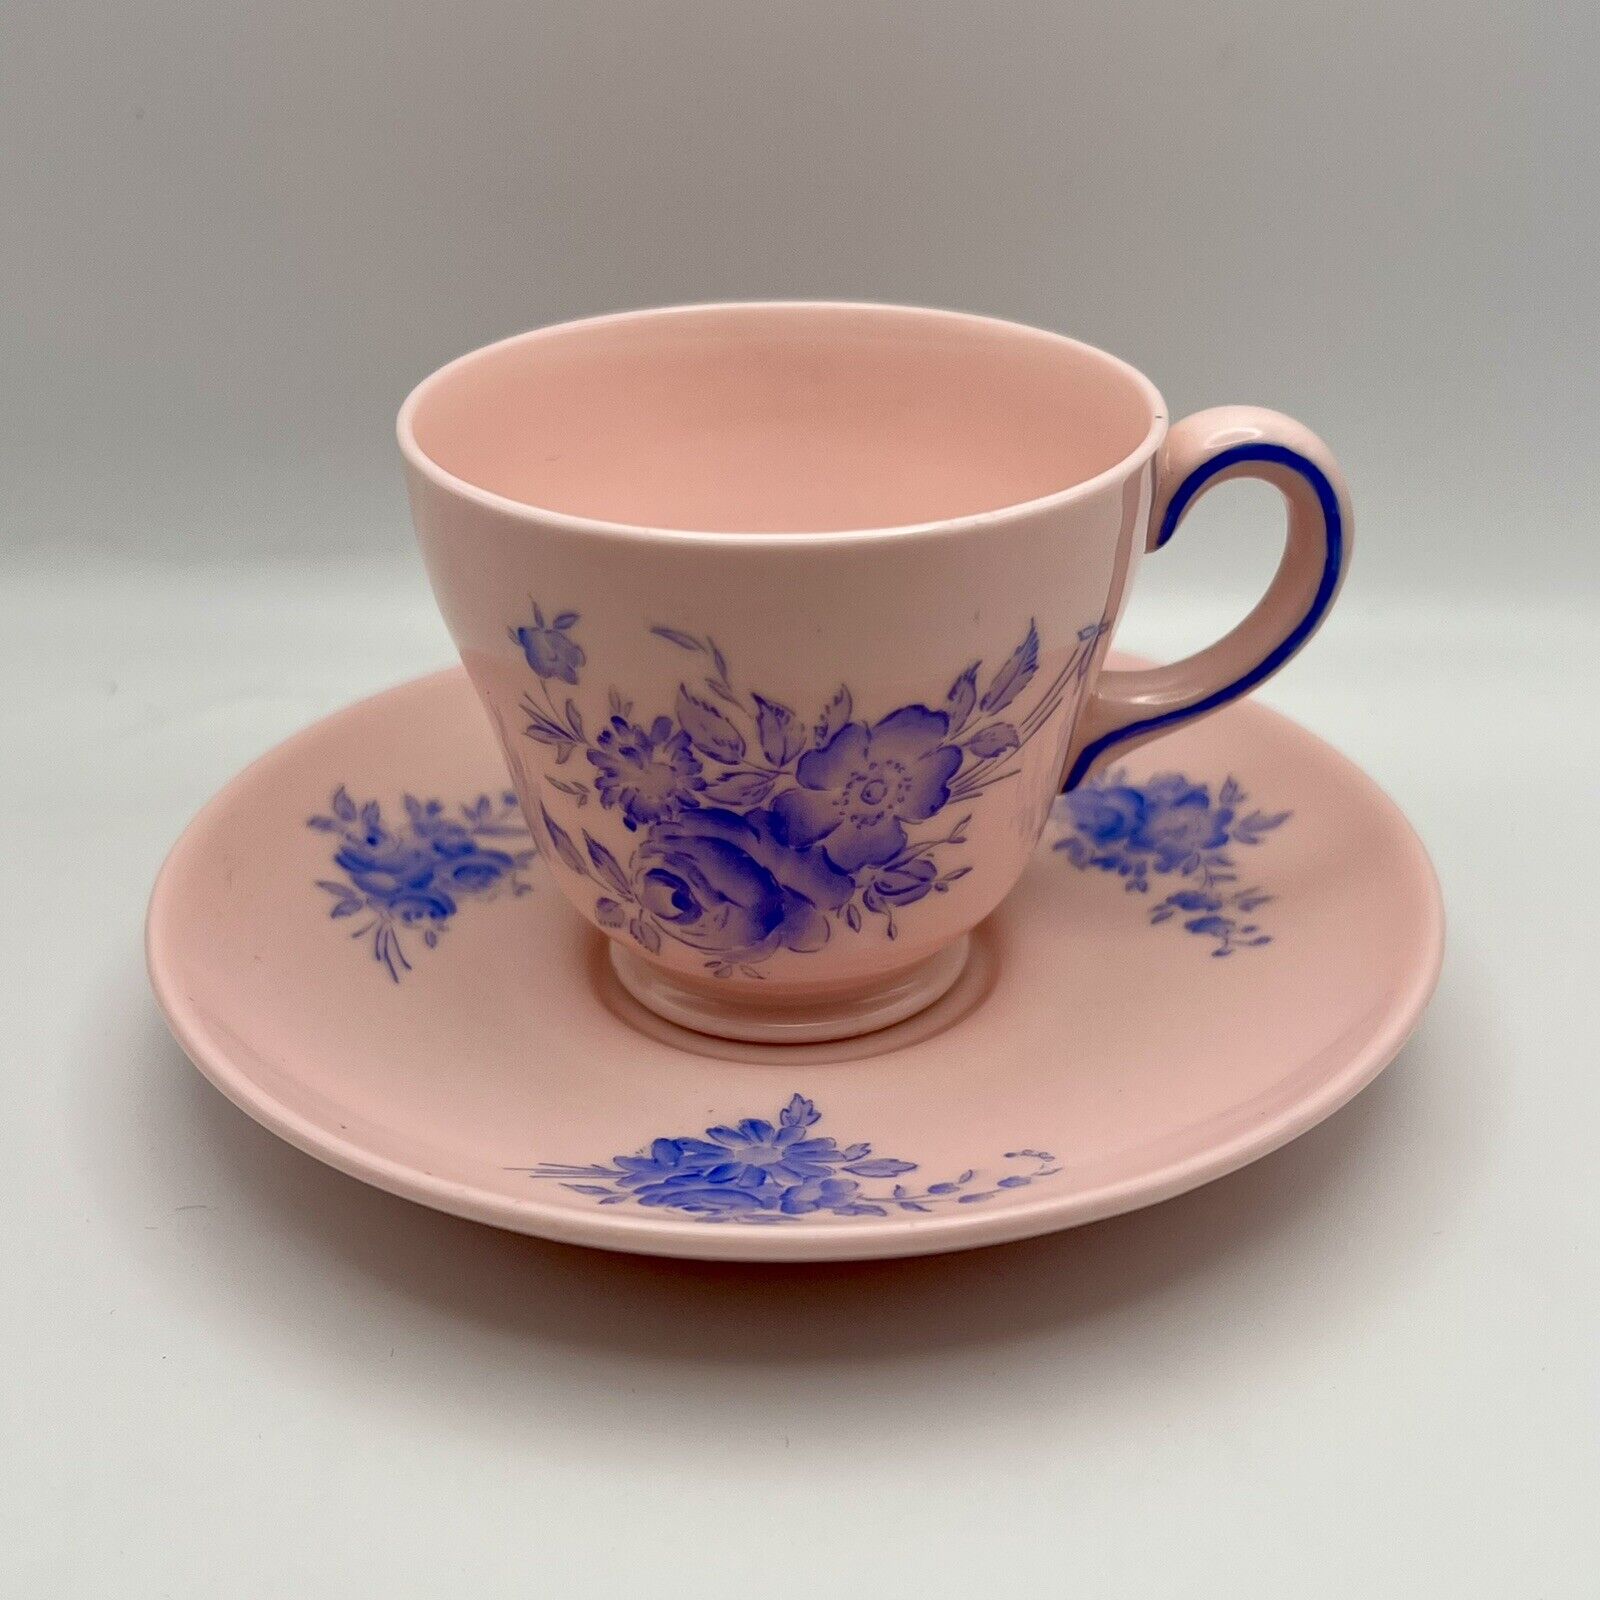 Vintage Rare Wedgwood Alpine Pink Set of 2 Teacup & Saucer WK 3315 Porcelain